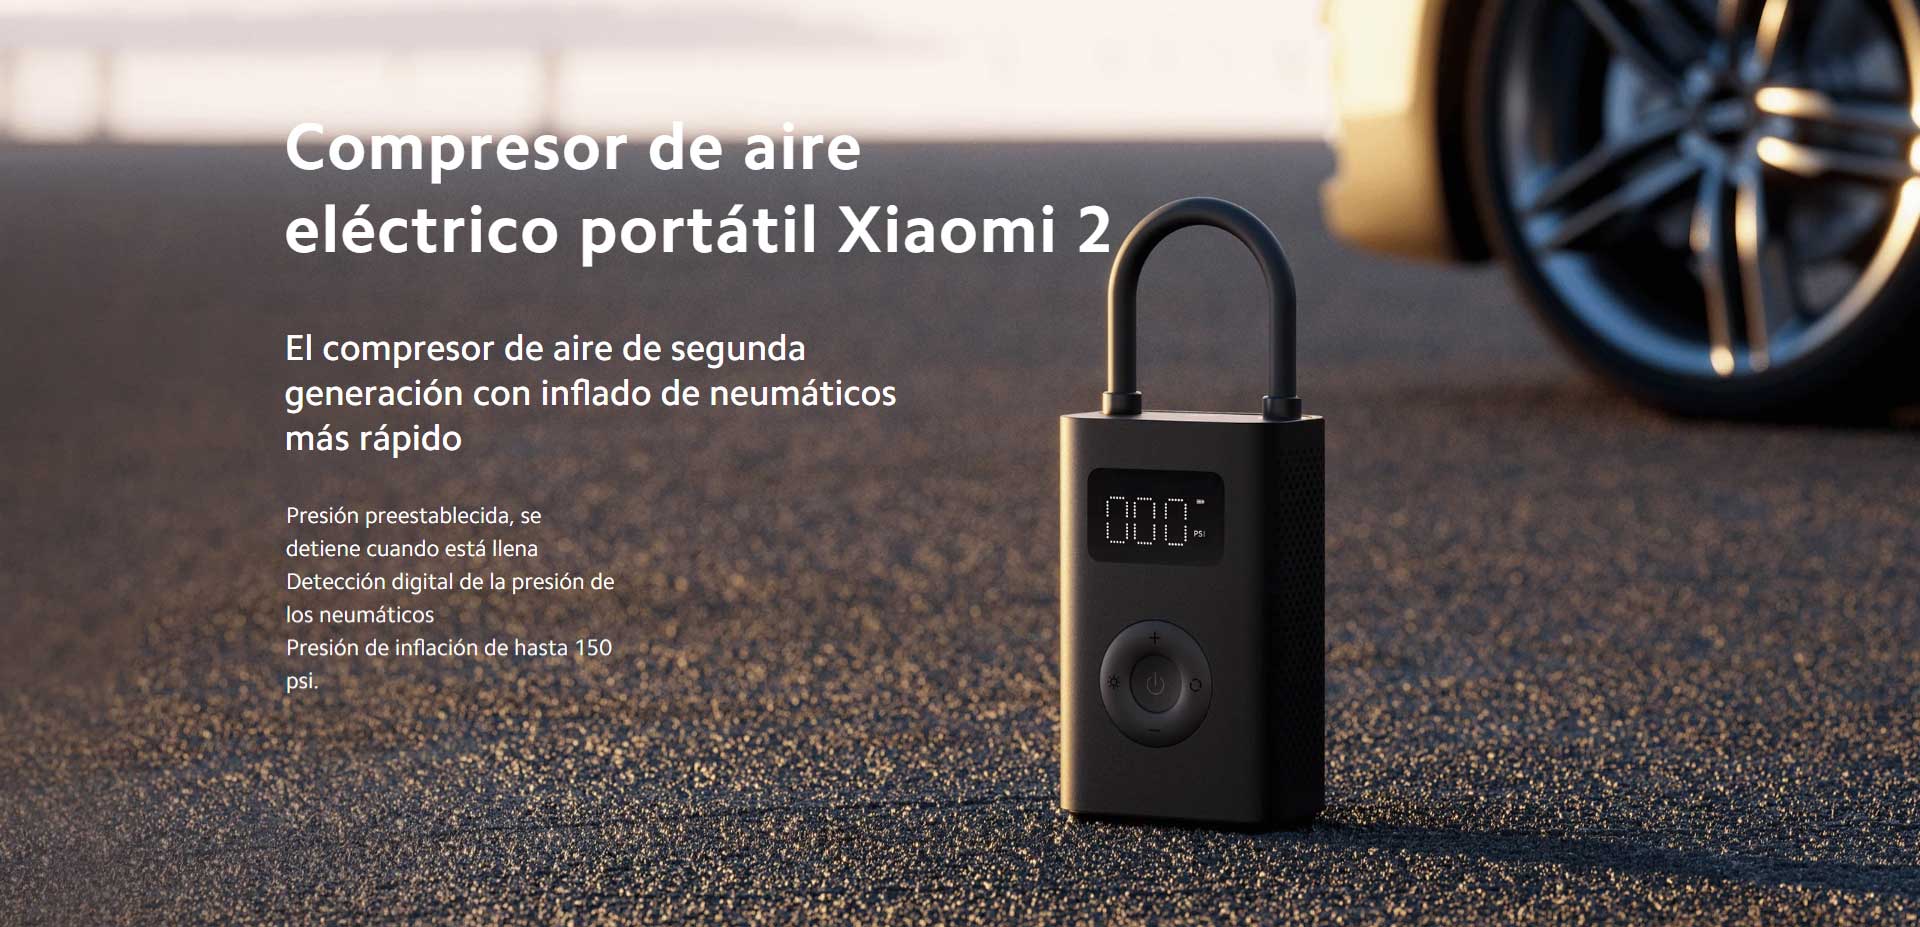 Xiaomi Compresor eléctrico de aire portátil 2 - Mi Uruguay